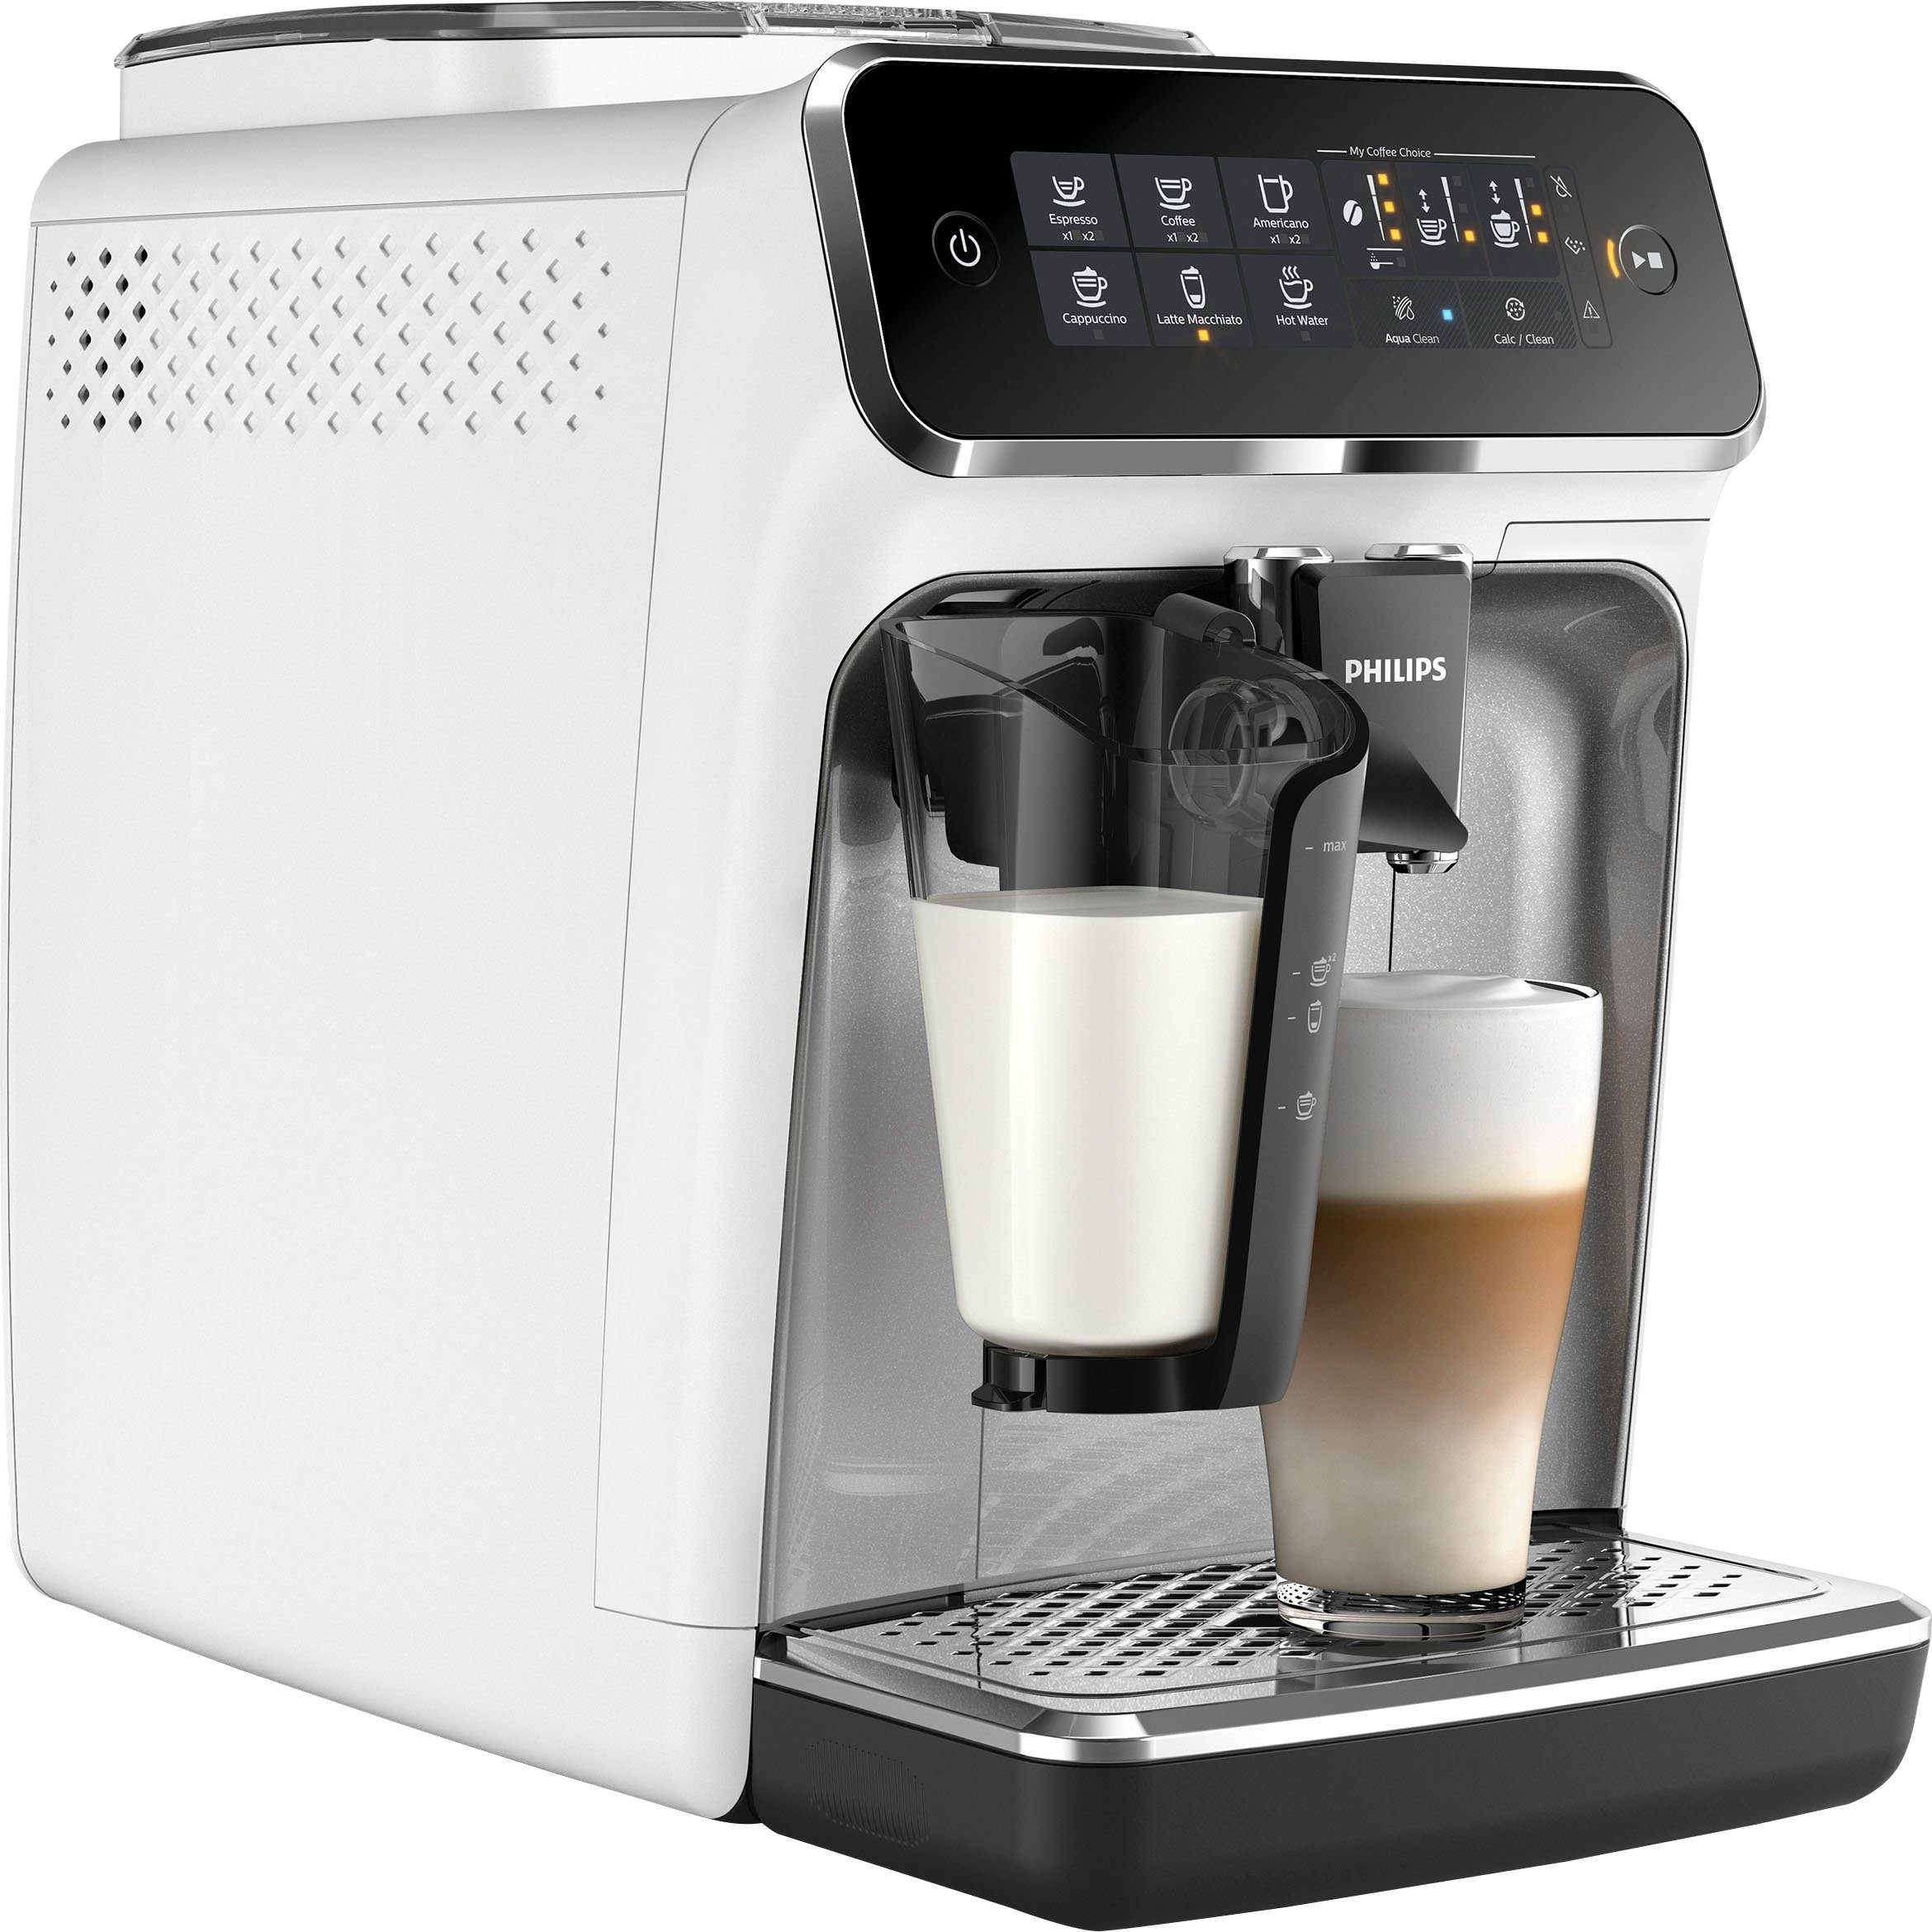 Philips Kaffeevollautomat 3200 Serie EP3243/70 LatteGo, weiß, inkl. gratis  Genusspaket im Wert von UVP 49,99 €